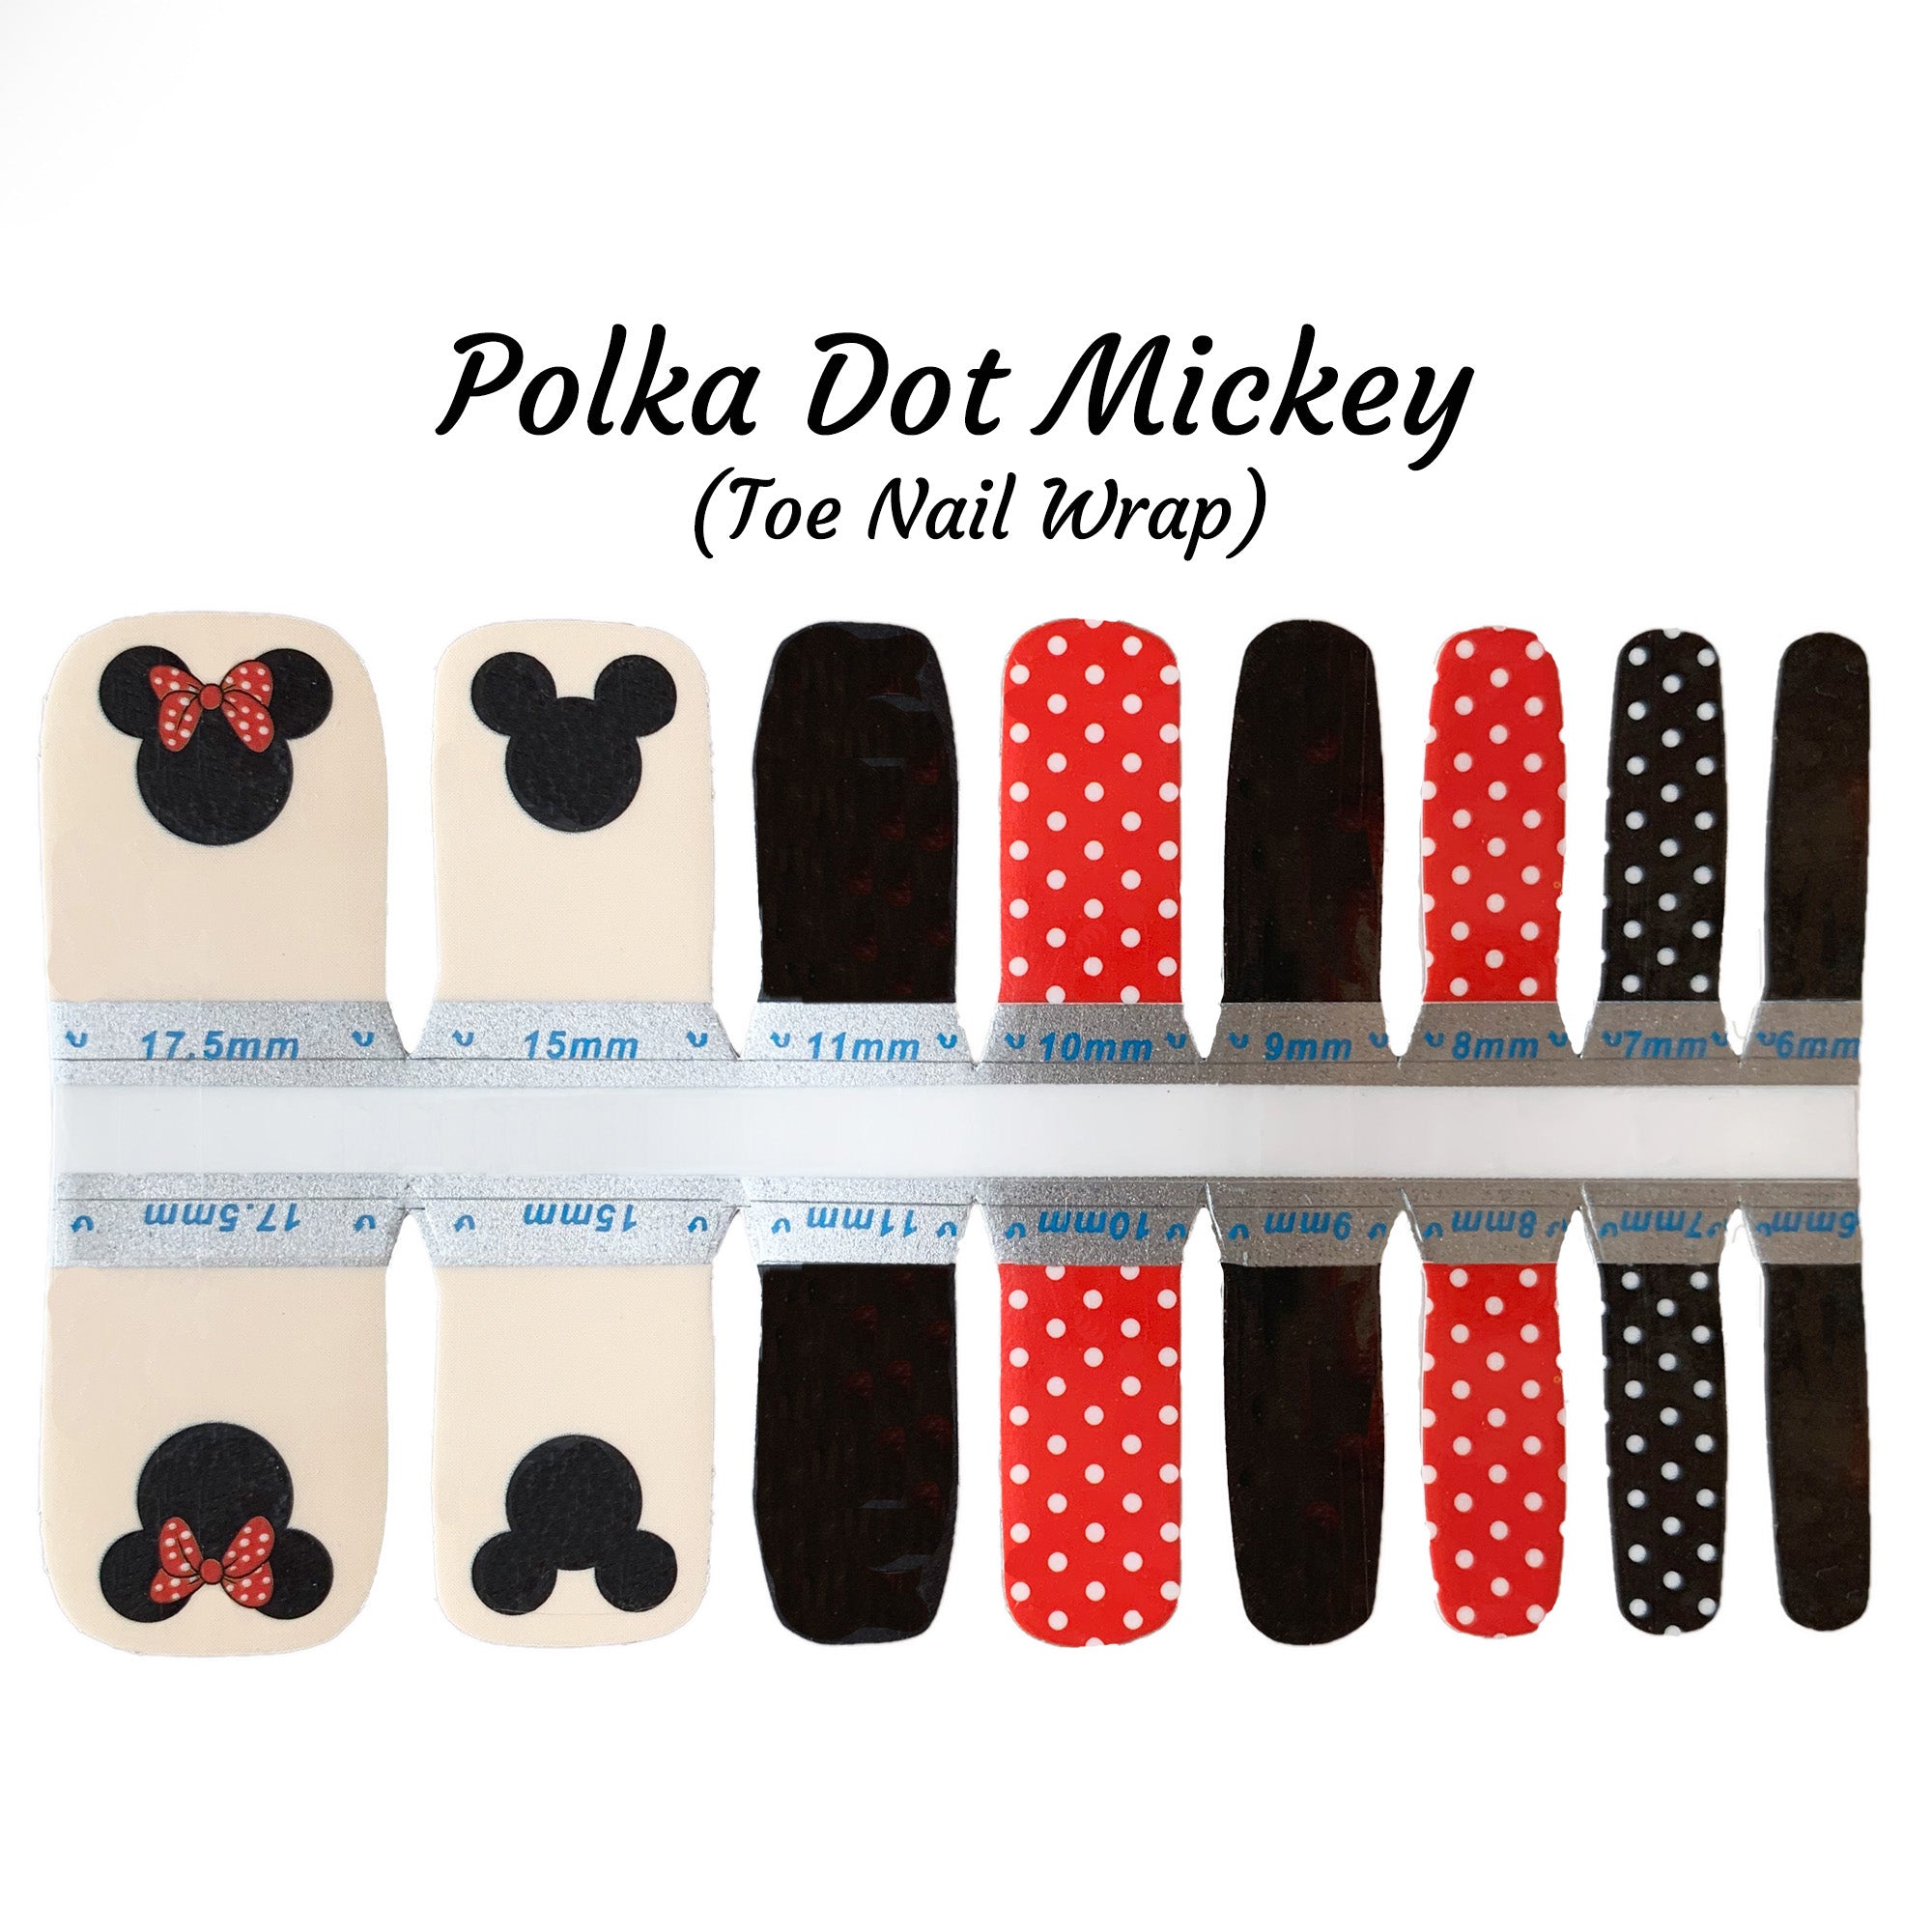 Polka Dot Mickey Toe